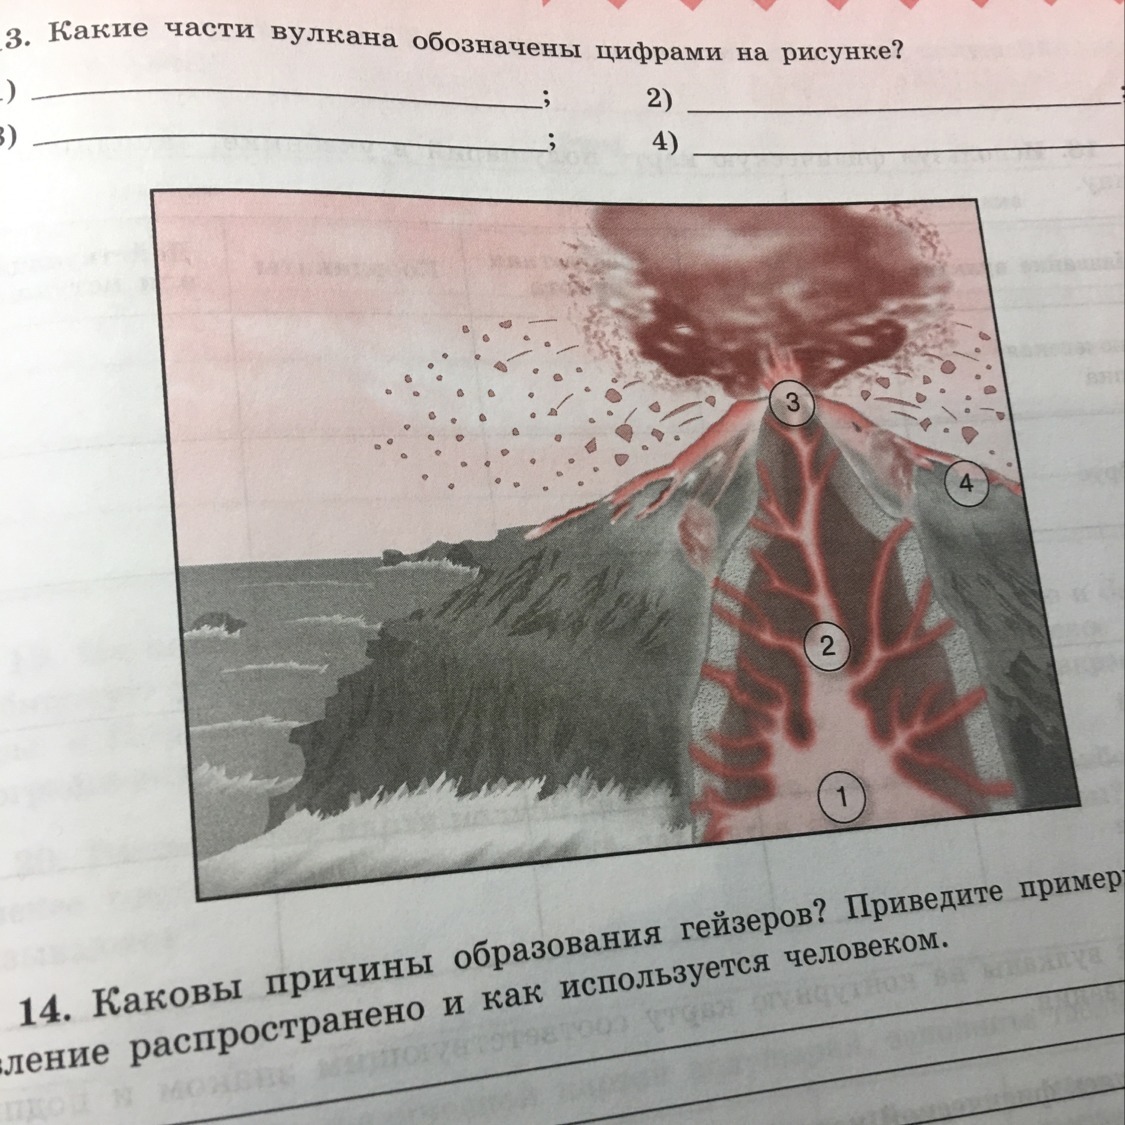 Какие части вулкана обозначены на рисунке